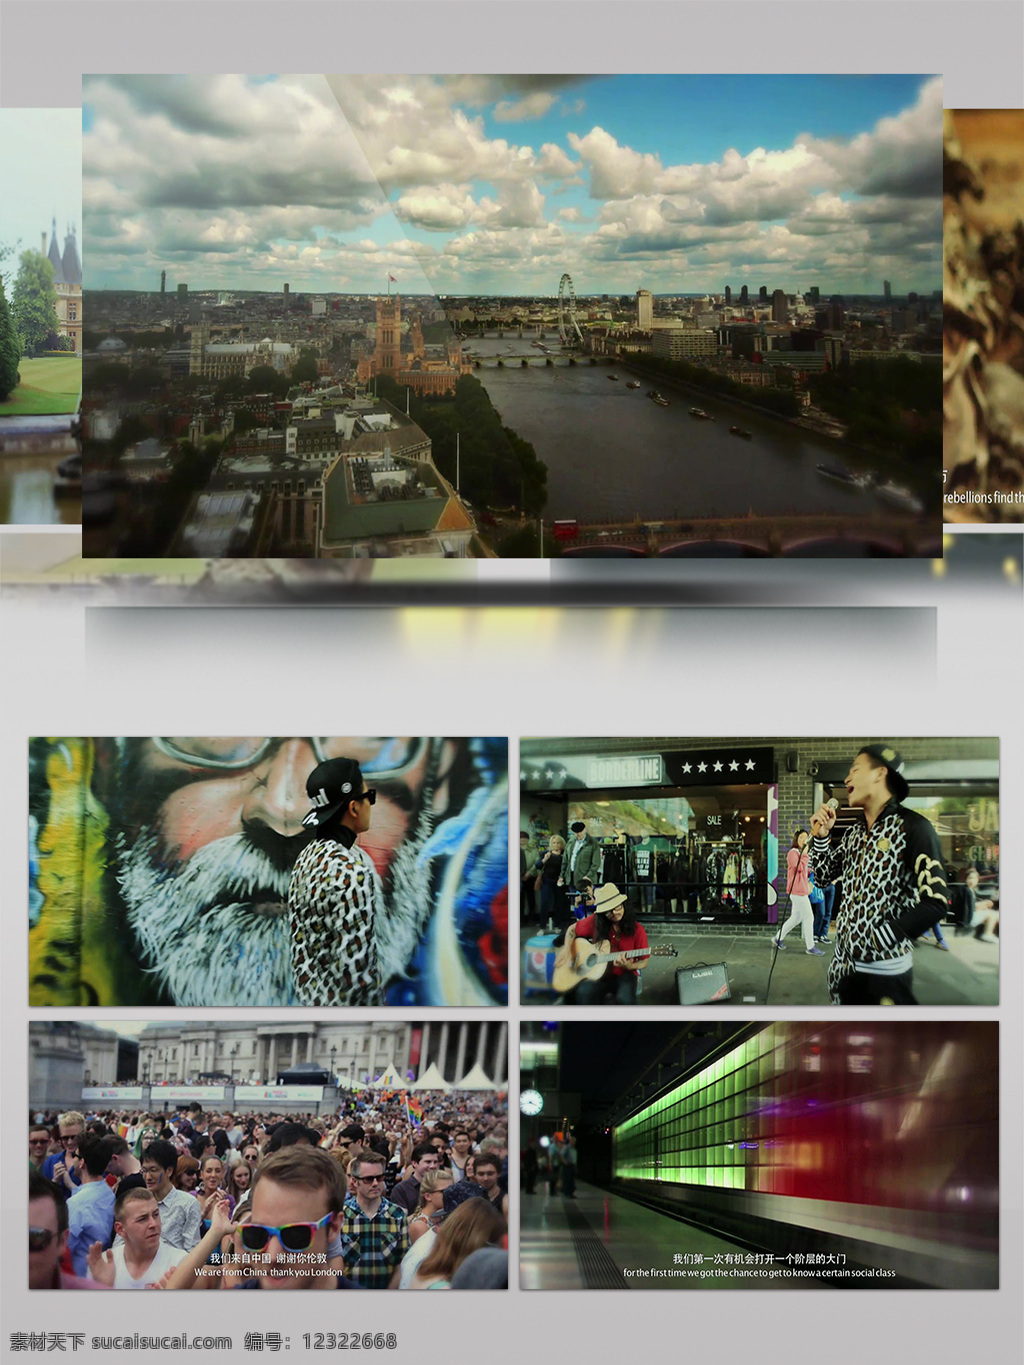 谢谢 伦敦 城市 景观 旅游 宣传片 城市景观 节奏 人文